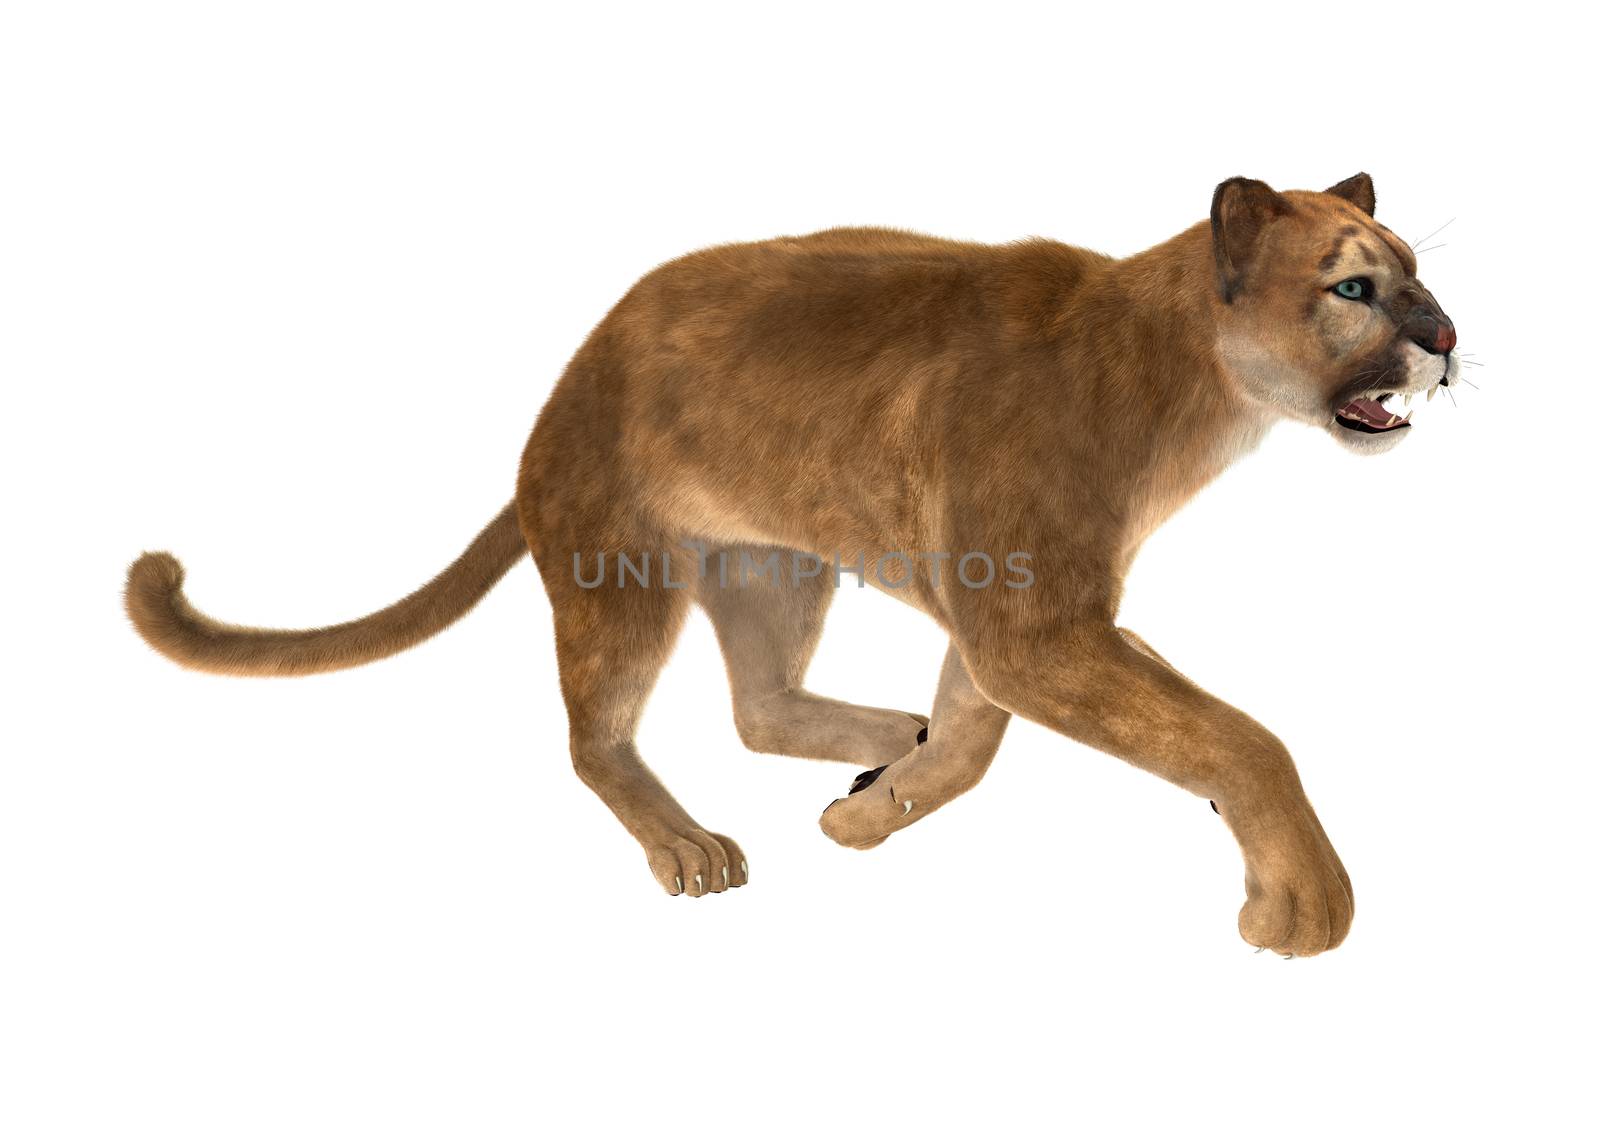 Big Cat Puma by Vac